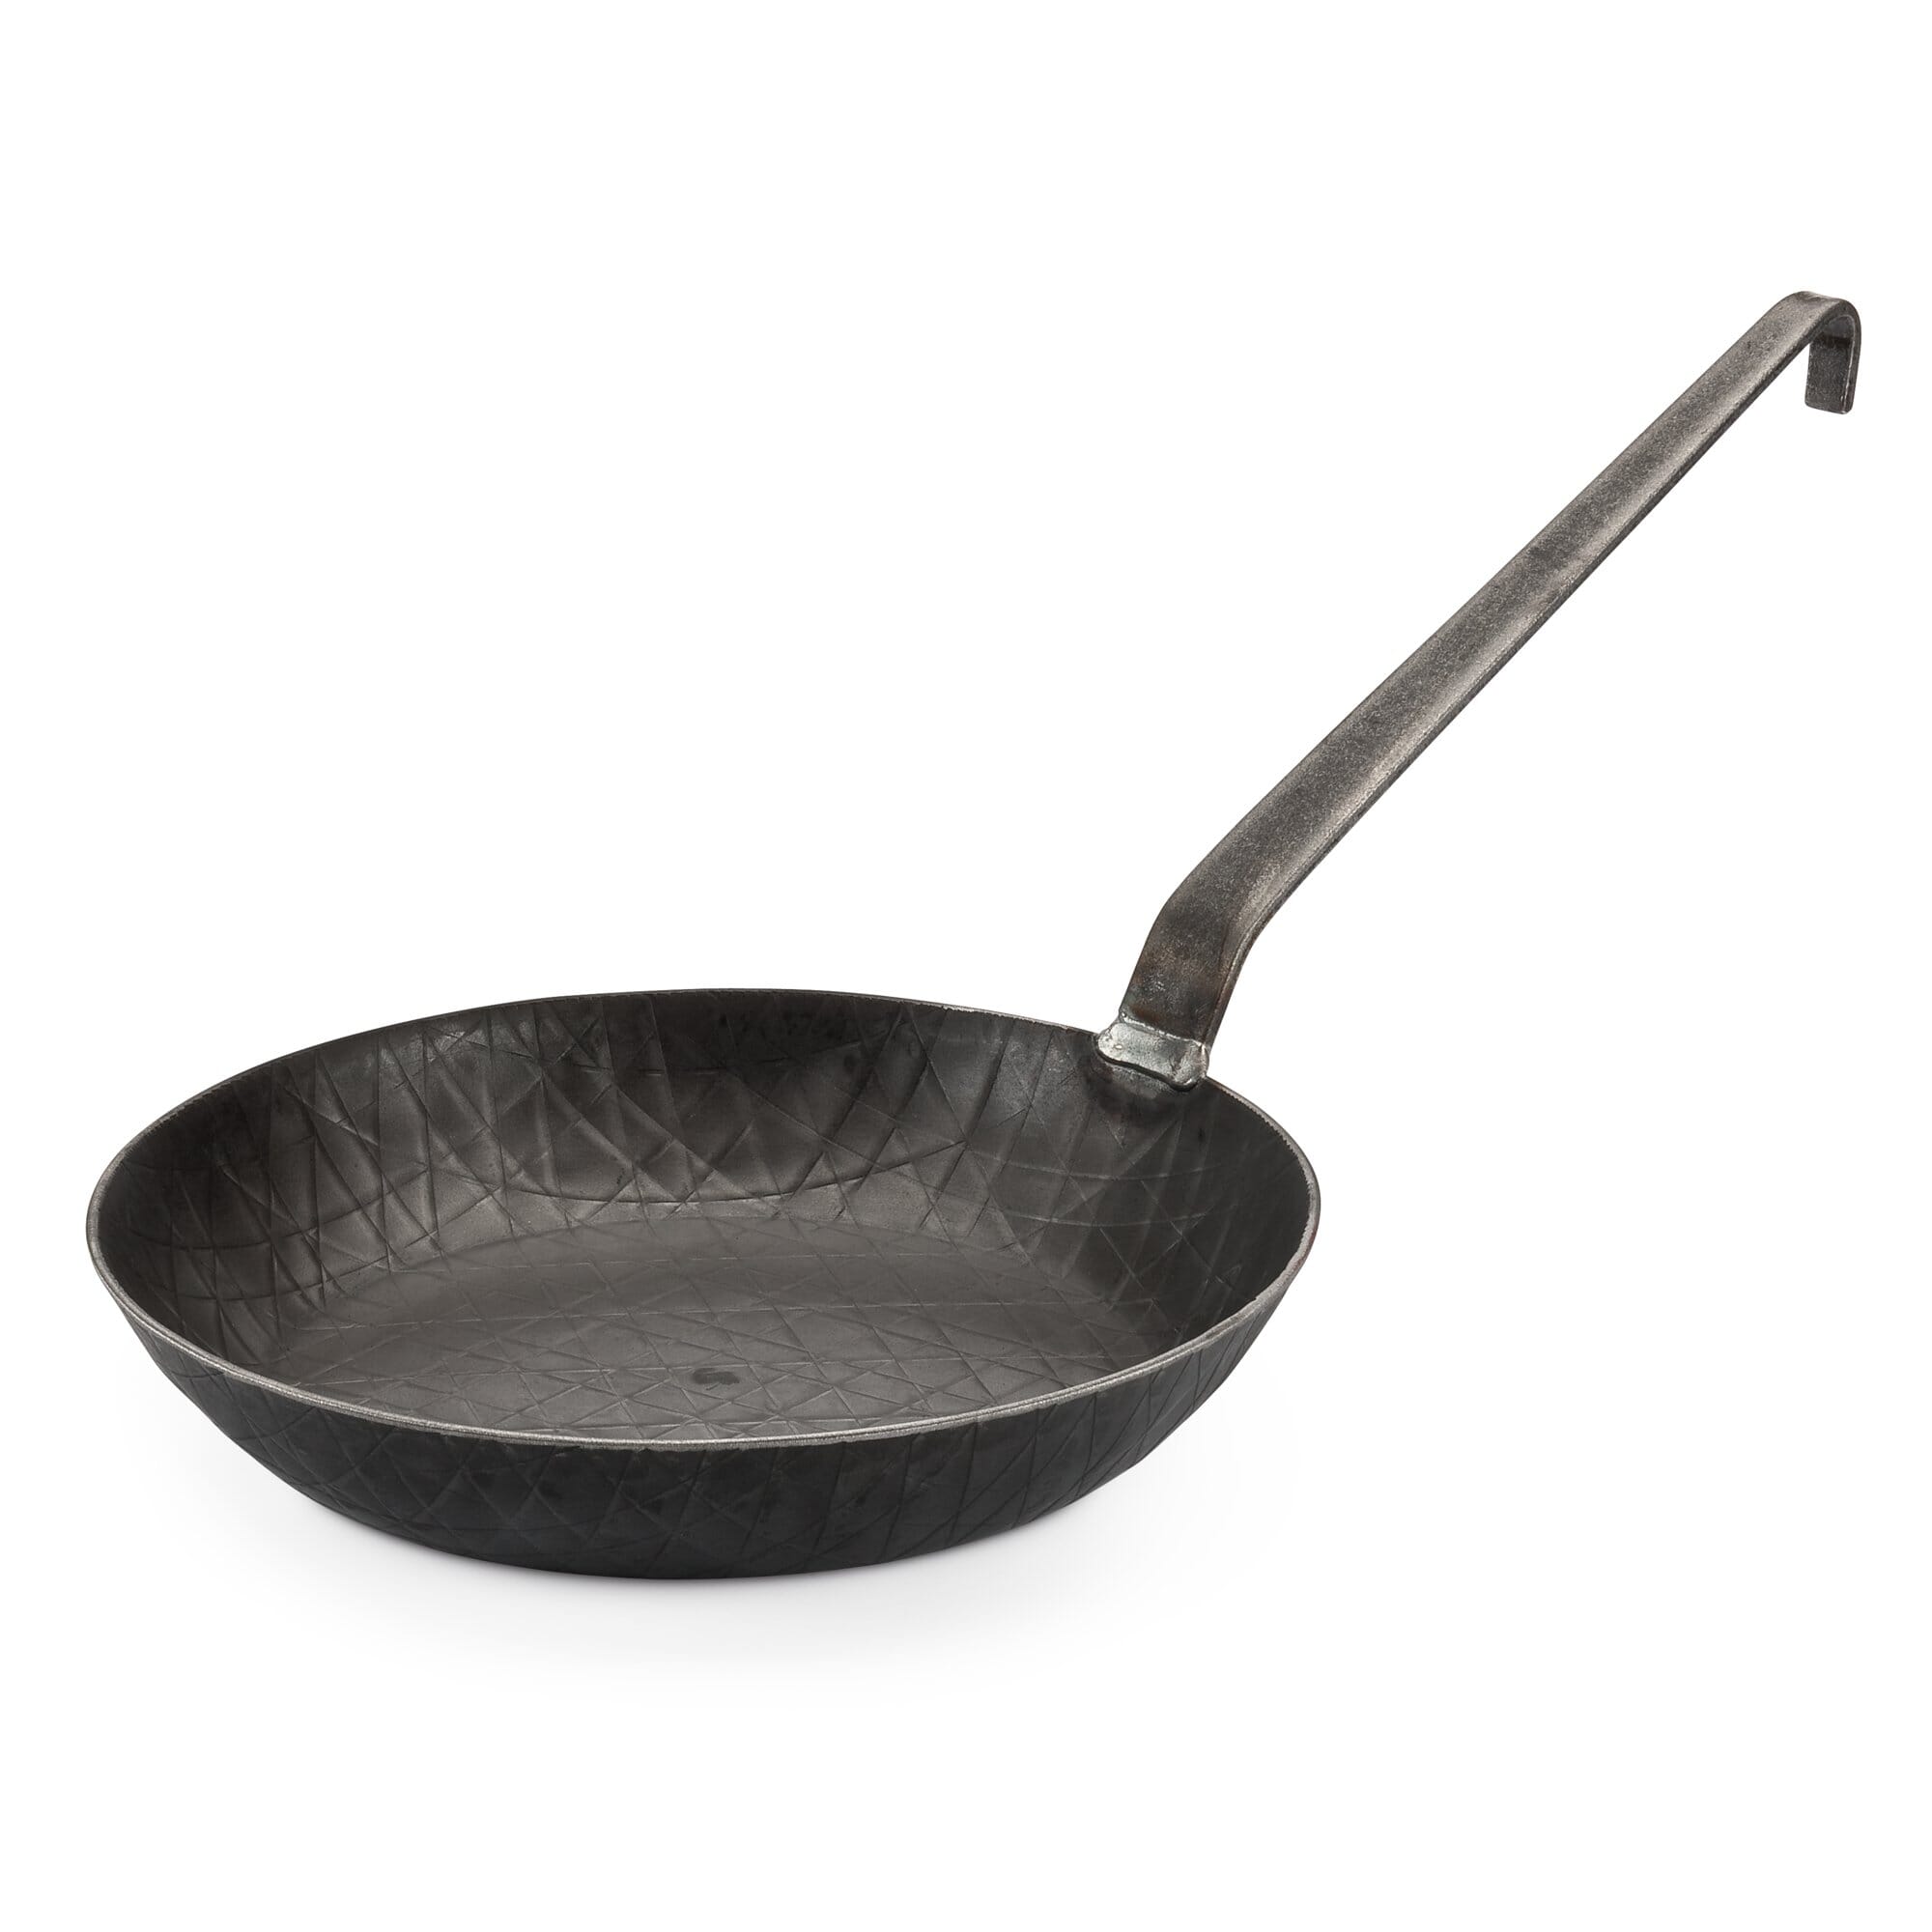 Details about   Iron Paella Pan With Short Handel Flat Wok Skillet Shallow Fry Pan Iron Kadahi 